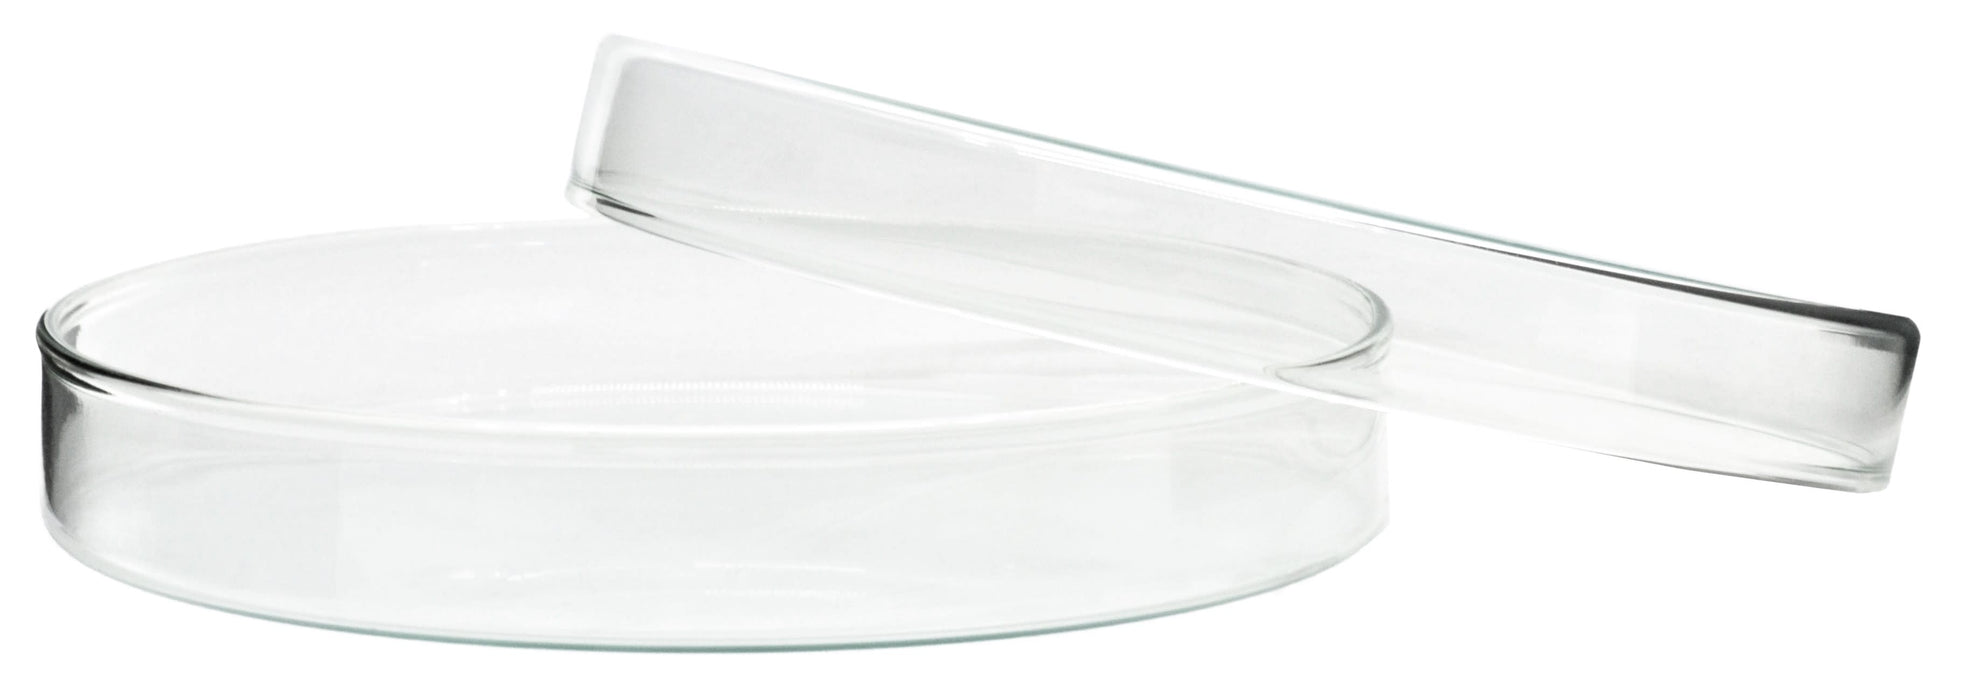 Petri Dish - 180 x 30mm - Soda Glass (Discontinued)